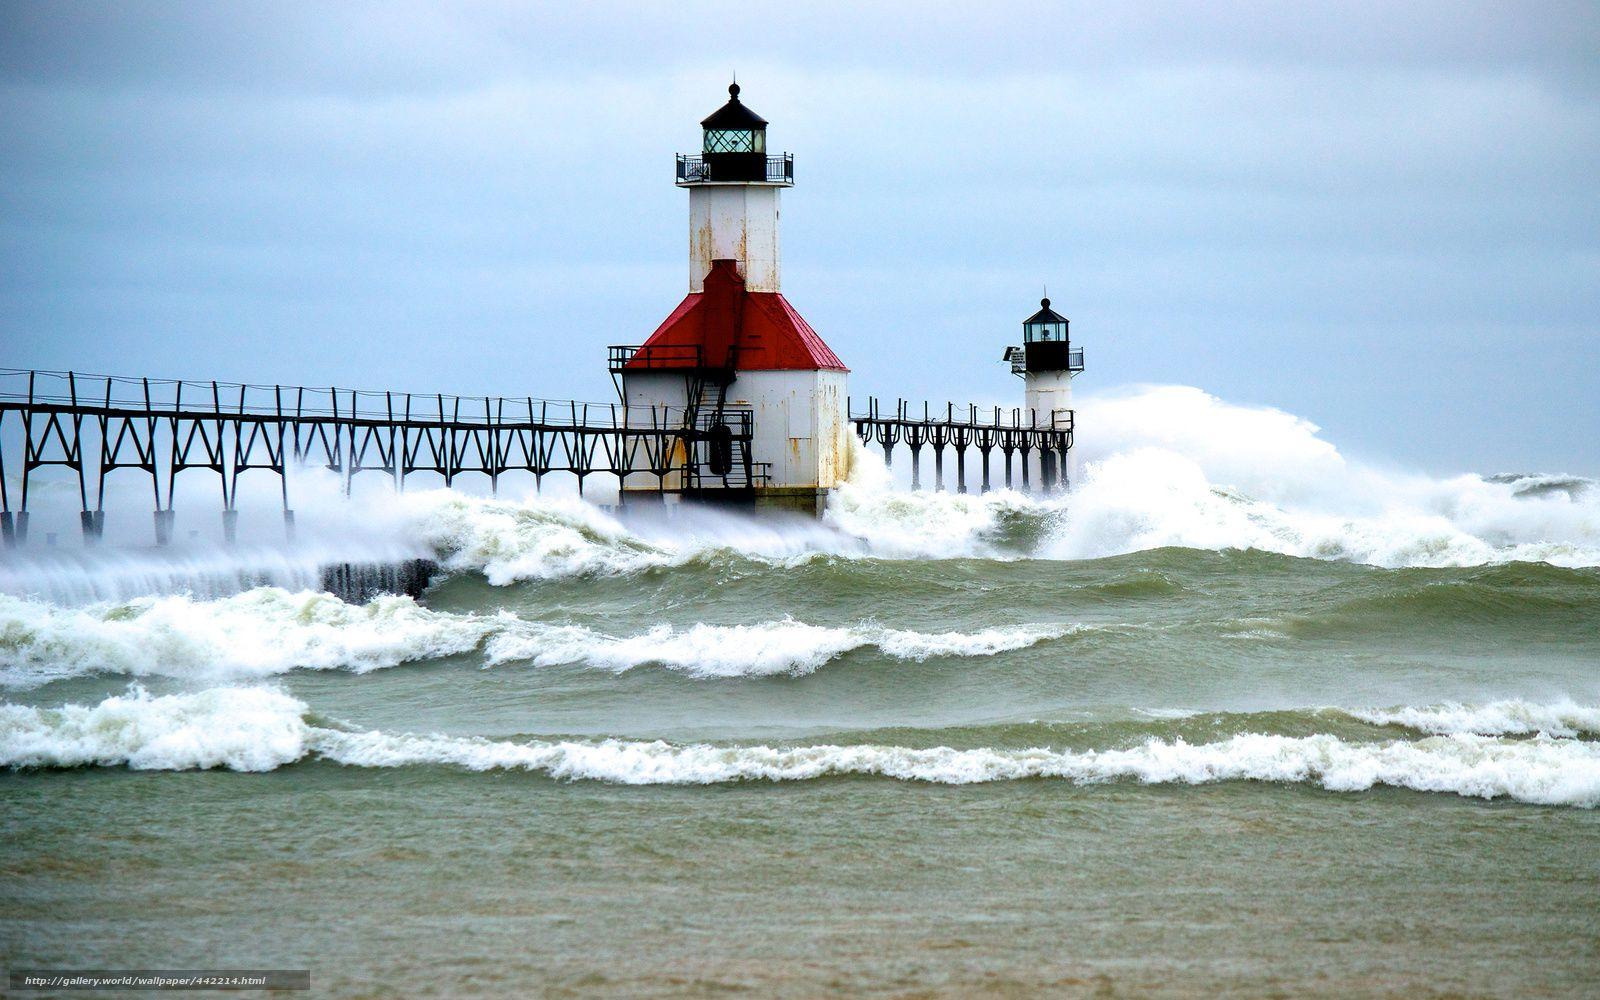 Download wallpaper lake michigan, Lake Michigan, lighthouse, storm